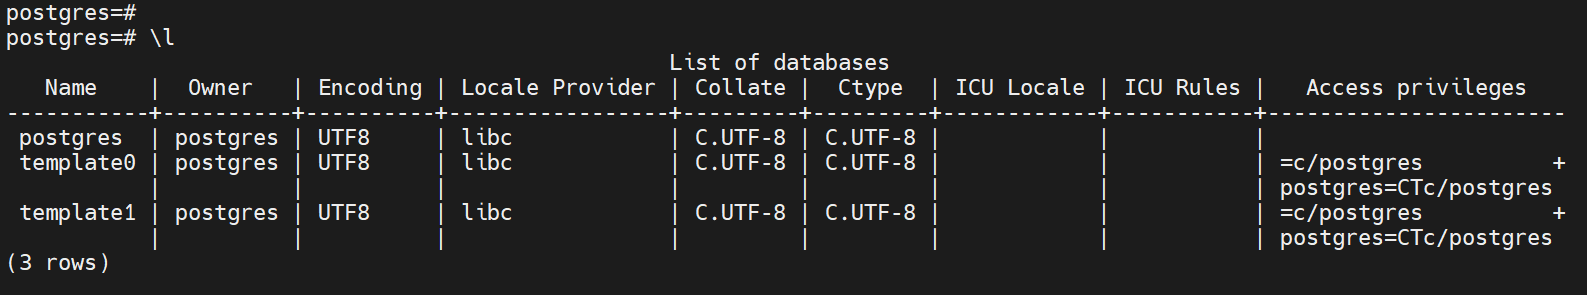 list-postgresql-databases